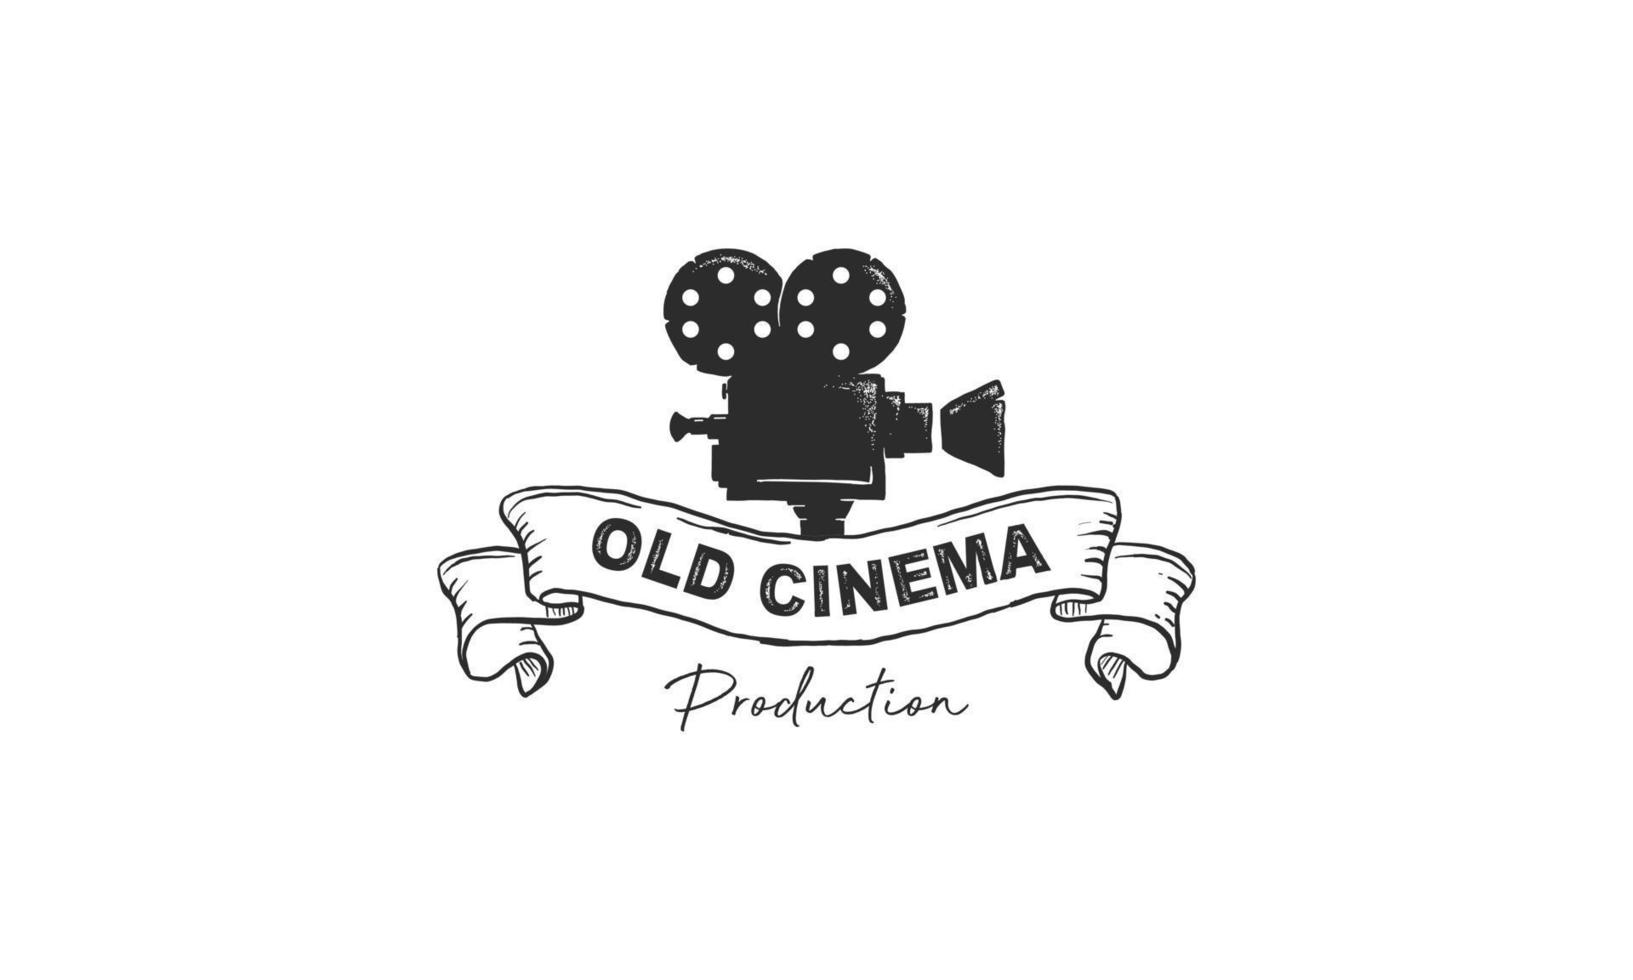 filme vintage cinema câmera de filme retrô grunge vídeo velho carretel de fita indústria produção logotipo design pro vector